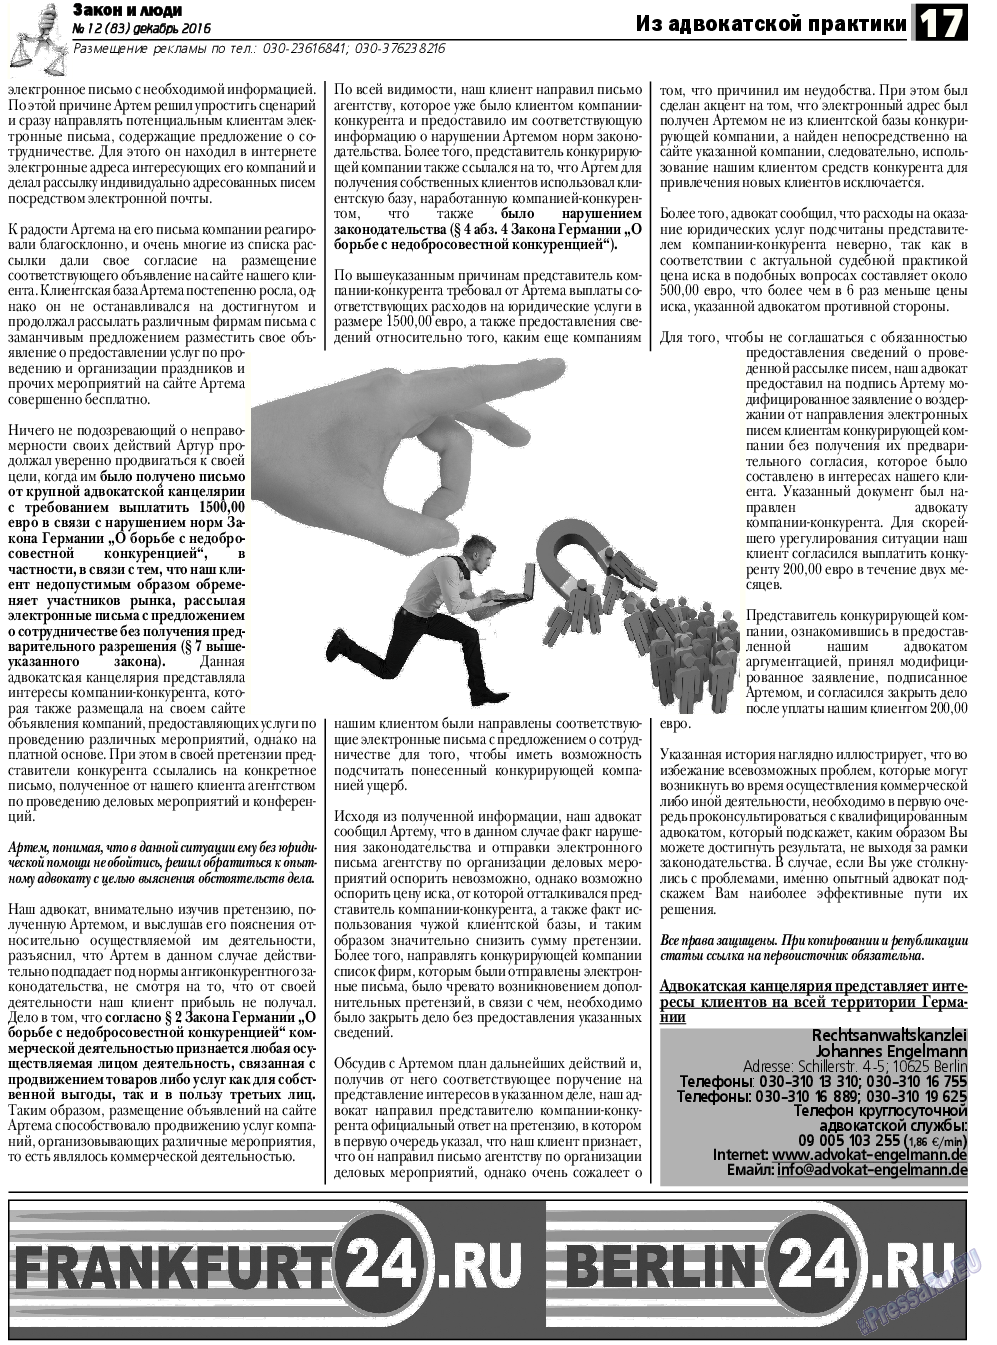 Закон и люди, газета. 2016 №12 стр.17